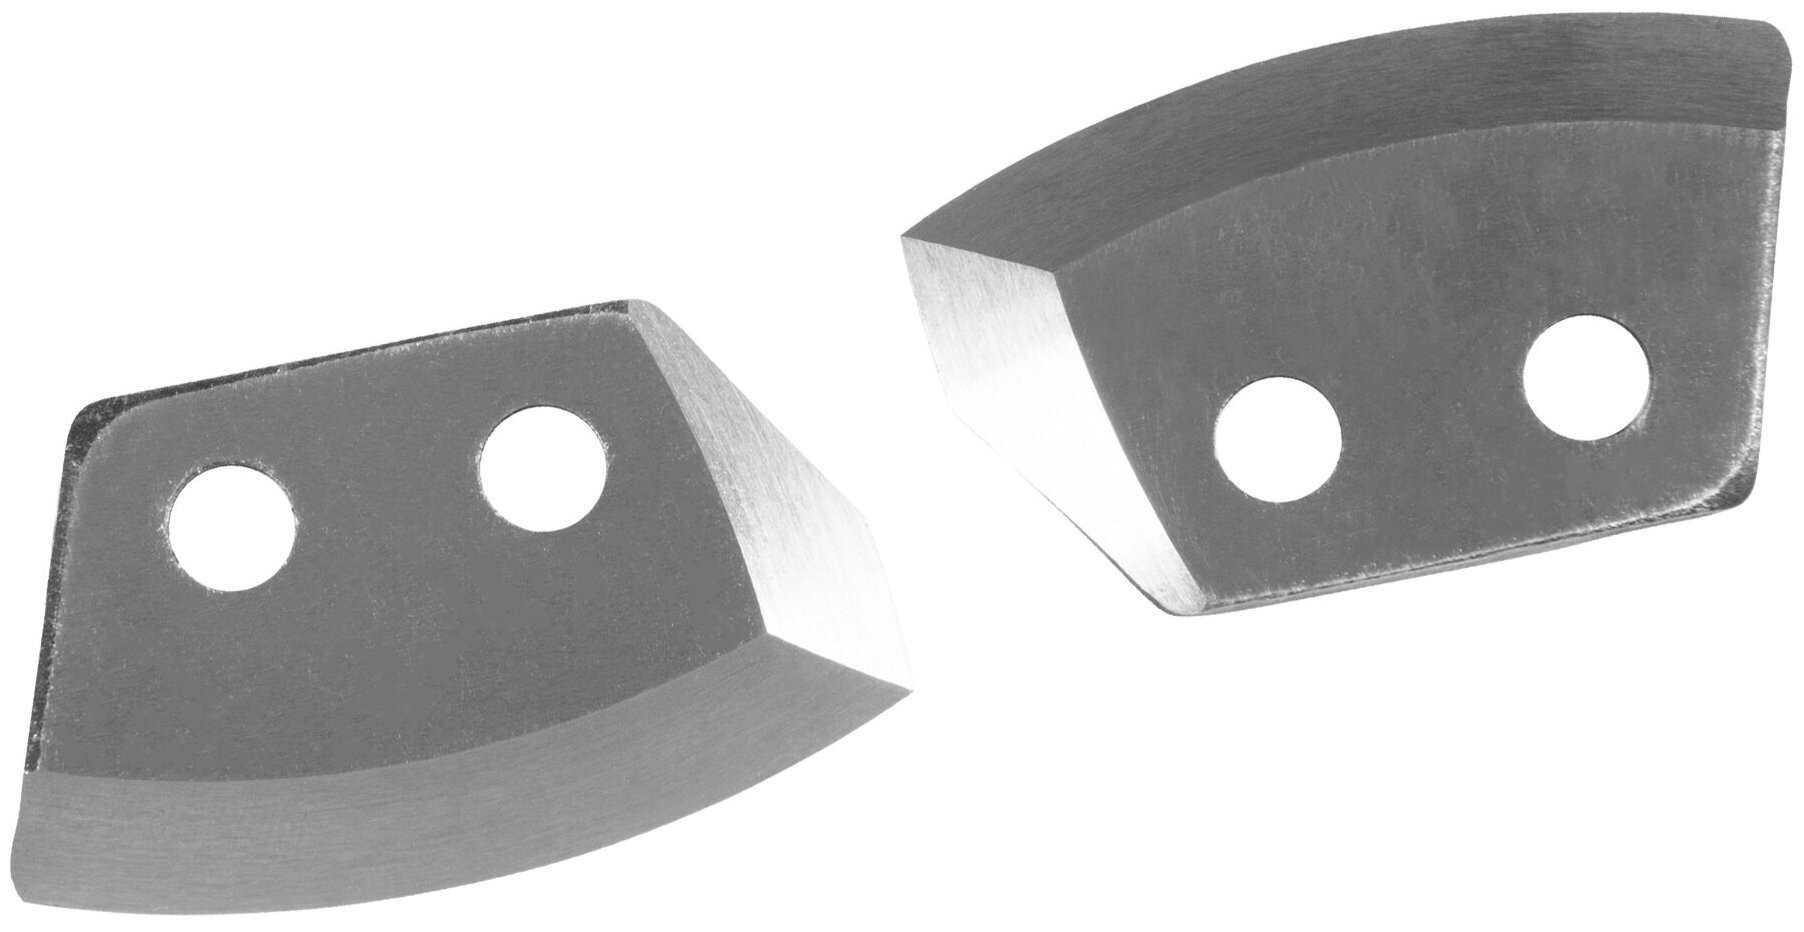 Ножи для ледобура правого вращения "NERO" полукруглые 200мм (ПВ) (нержавейка)